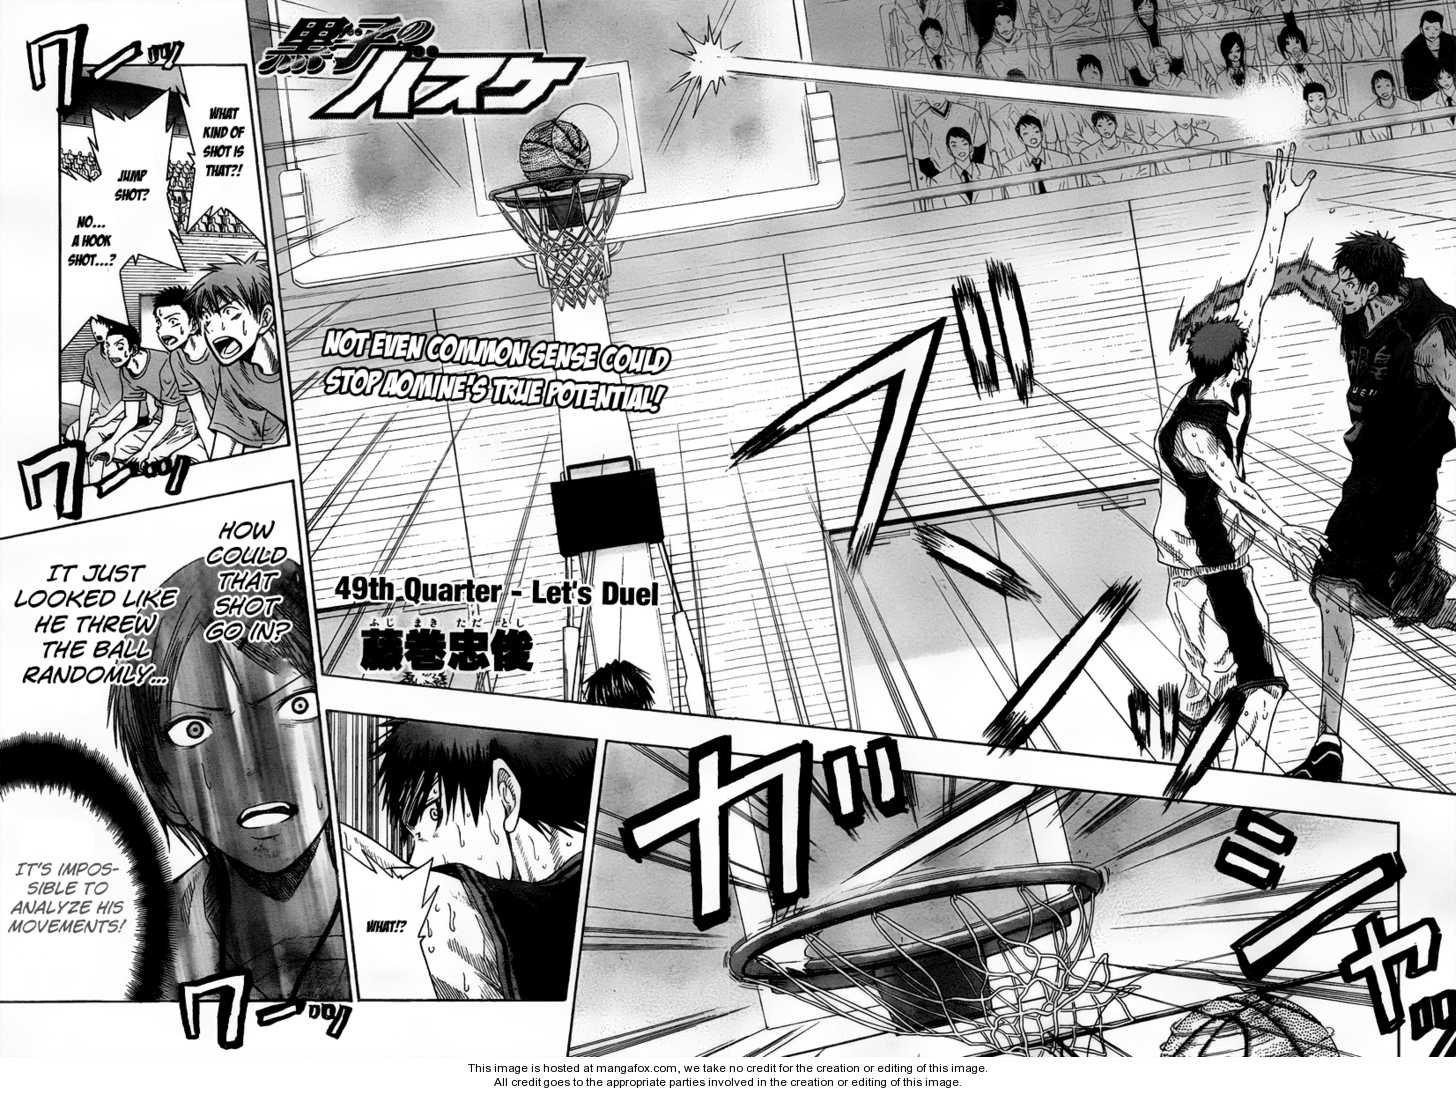 Kuroko No Basket Vol.06 Chapter 049 : Let's Duel - Picture 3